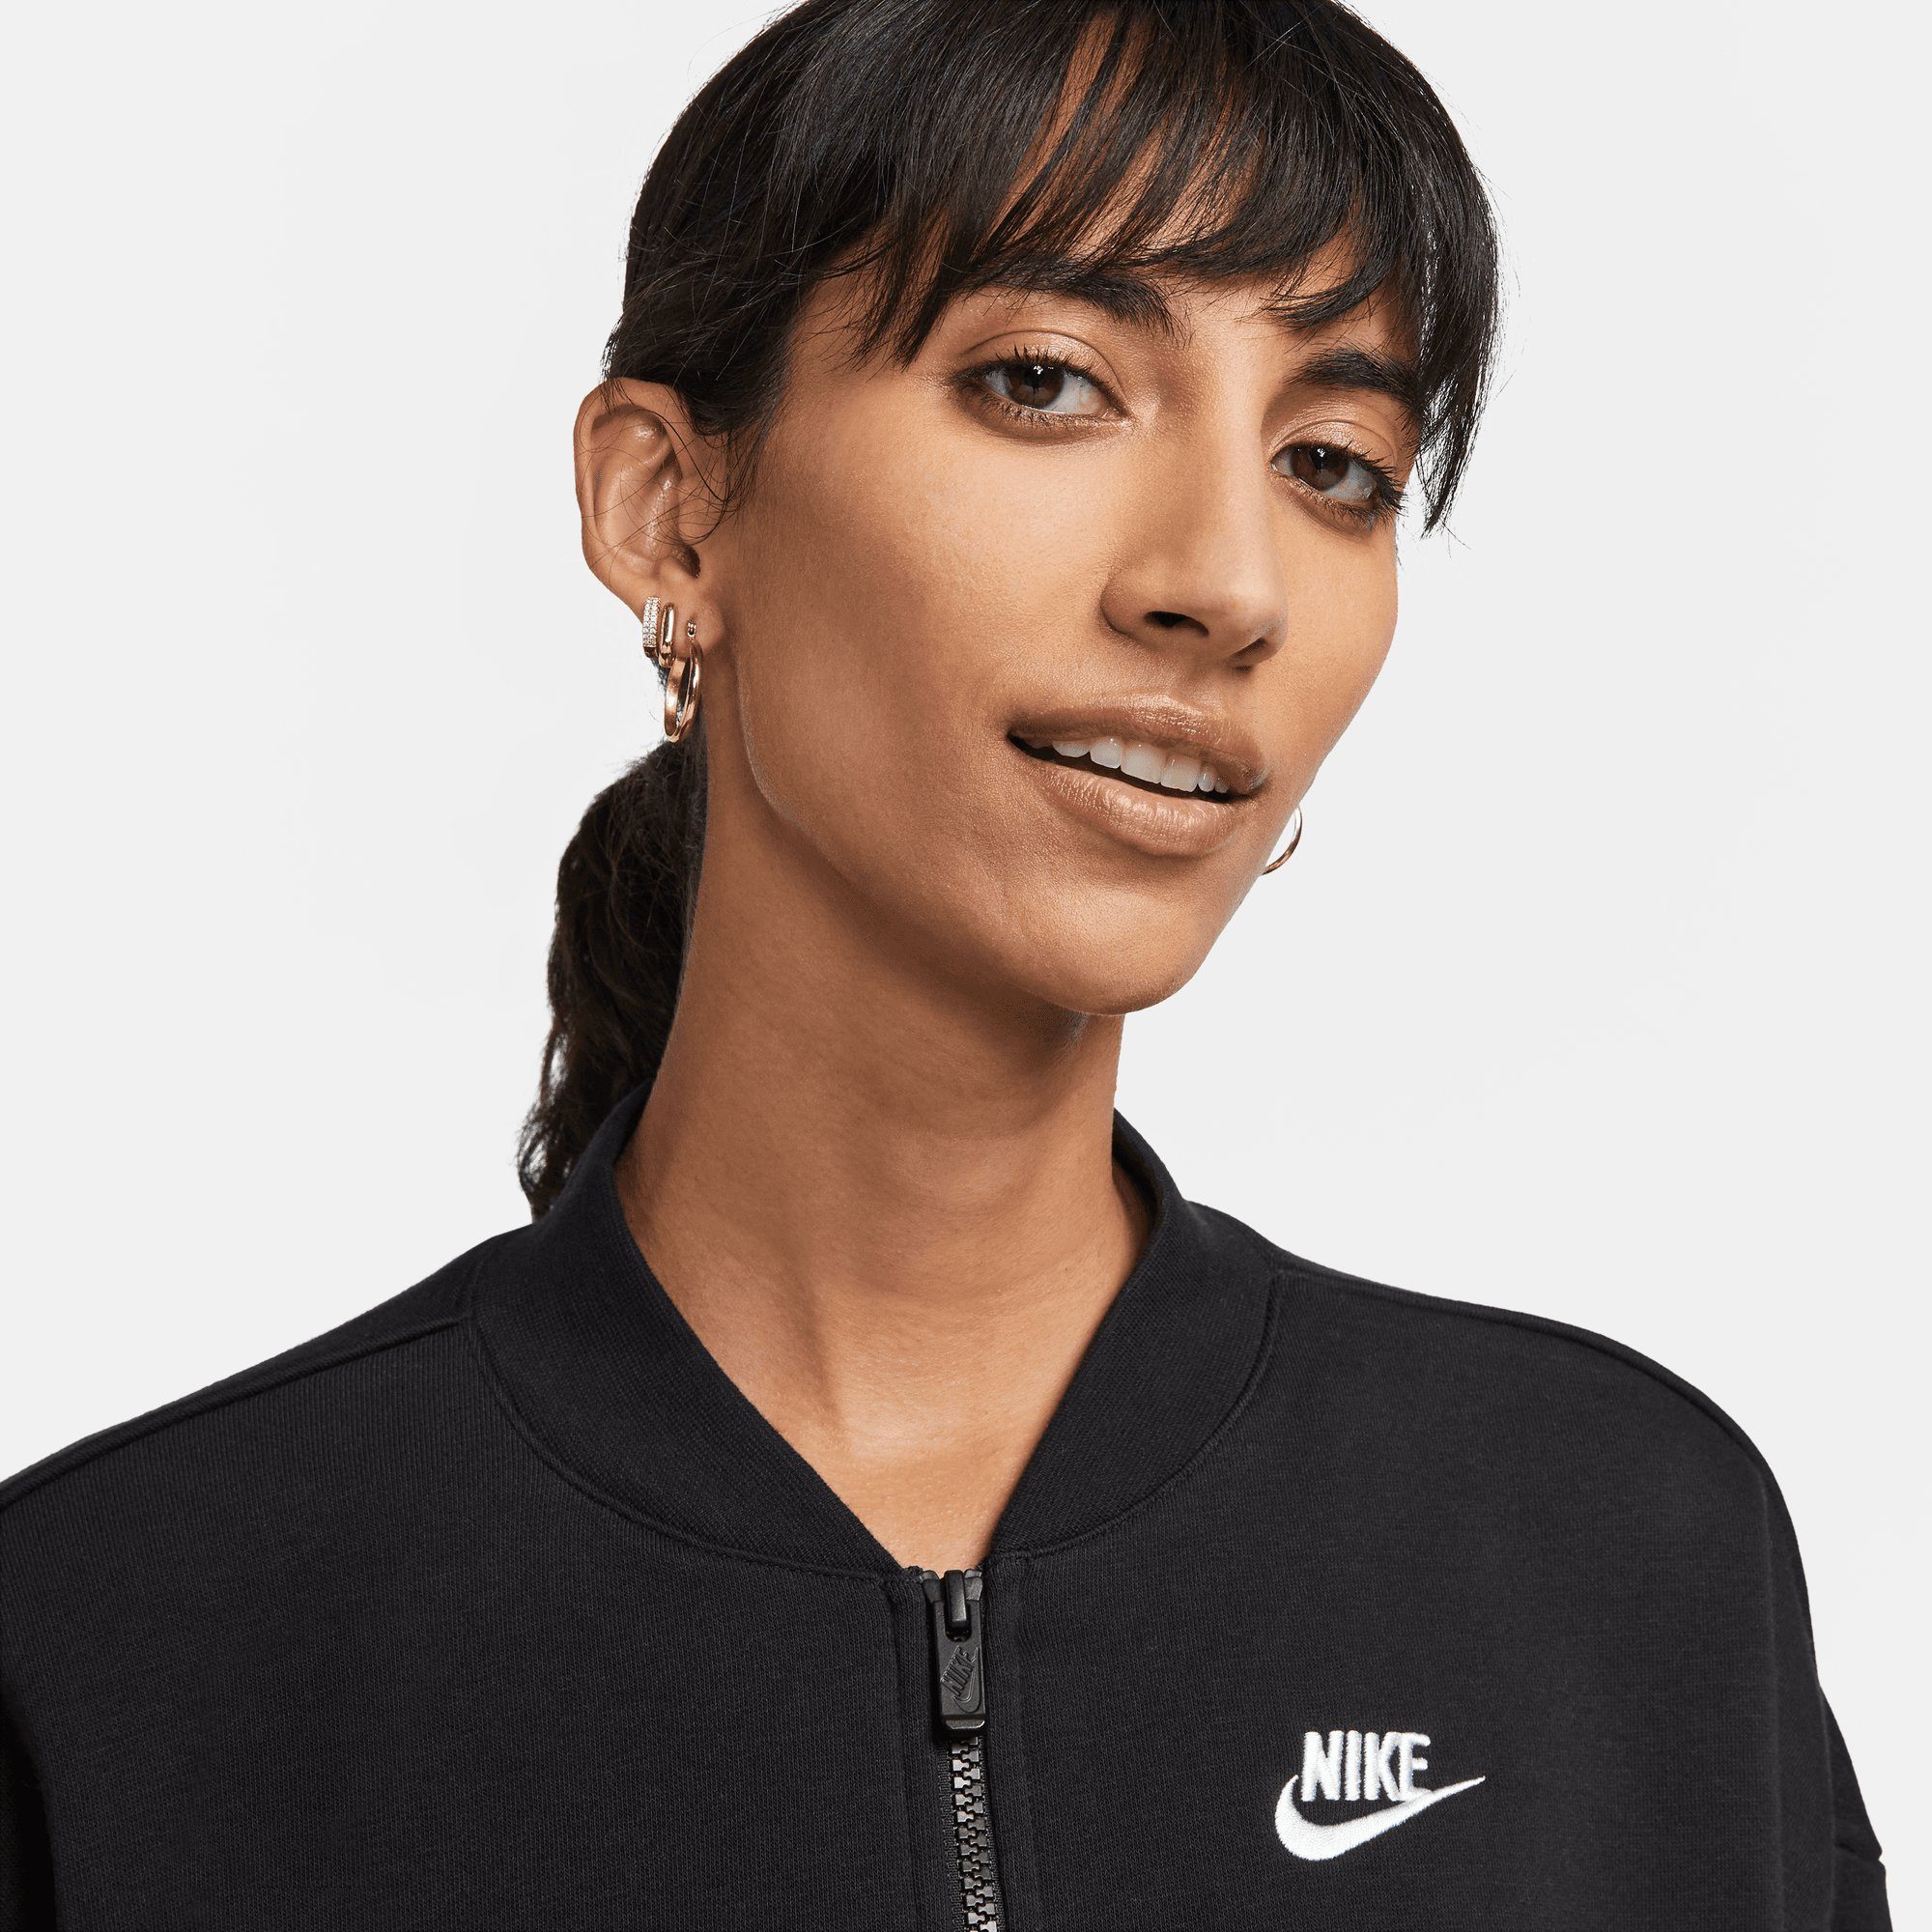 Sweatjacke OVERSIZED CLUB WOMEN'S CROPPED FULL-ZIP JACKET Sportswear FLEECE Nike BLACK/WHITE